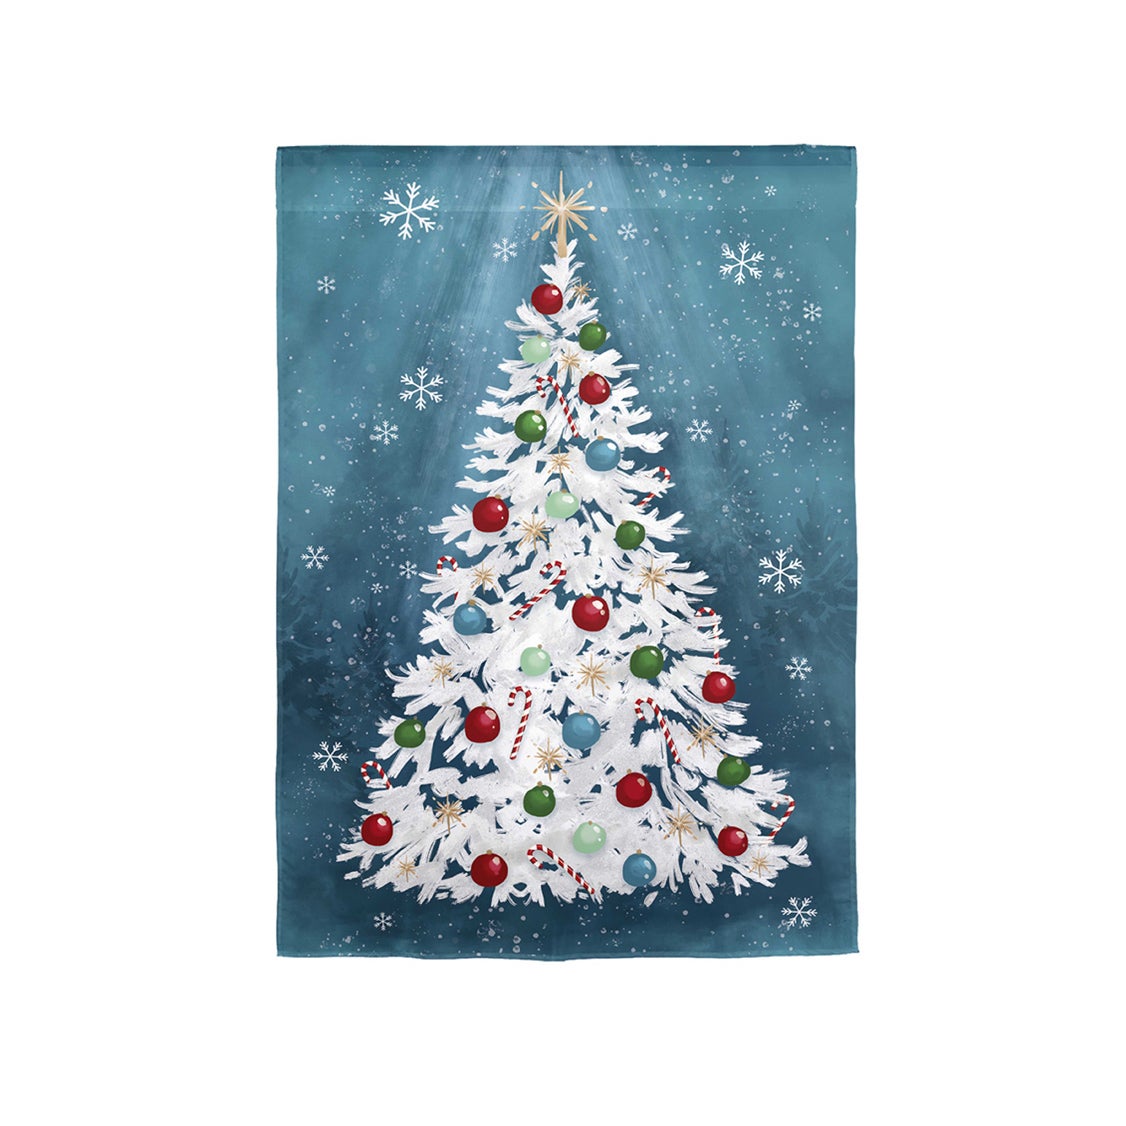 White Christmas Tree Linen Garden Flag